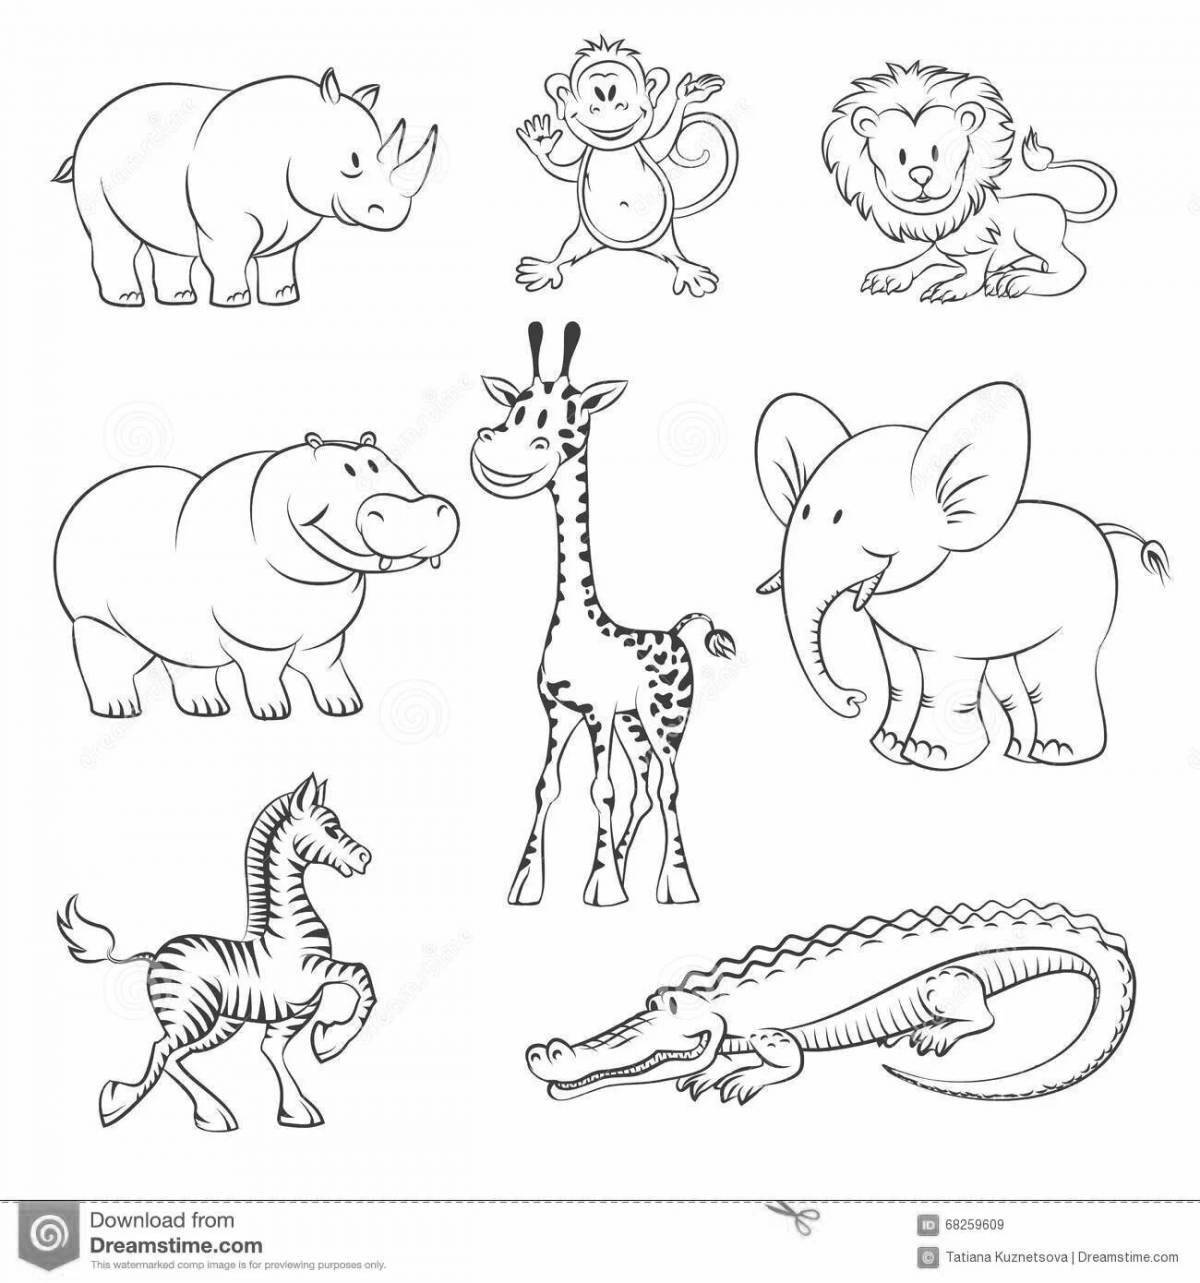 Великолепная раскраска африканских животных для детей 4-5 лет